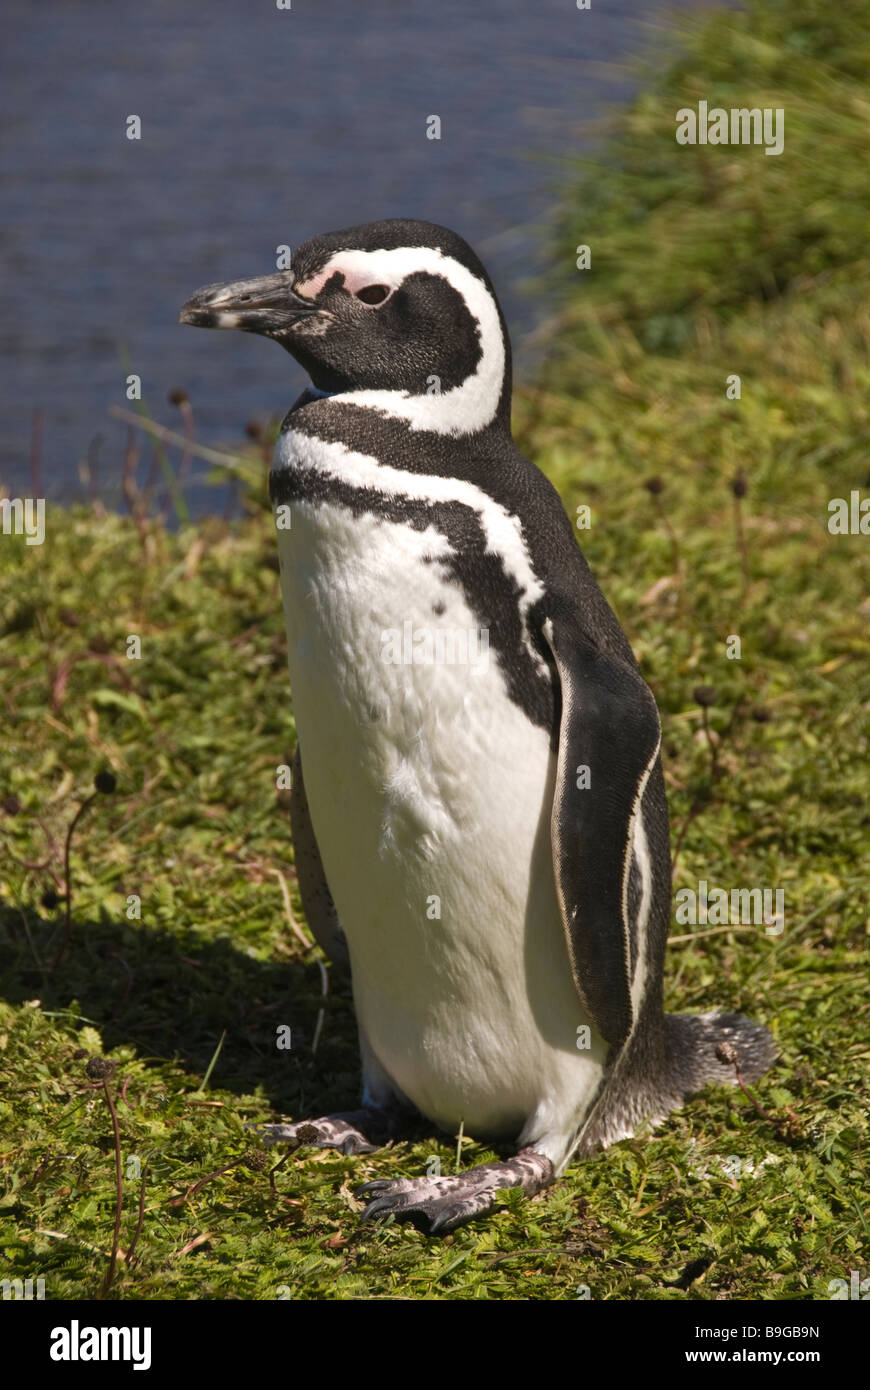 Elk198 4185v Chile Patagonia Seno Otway Penguin Reserve Magellanic penguin Spheniscus magallanicus Stock Photo